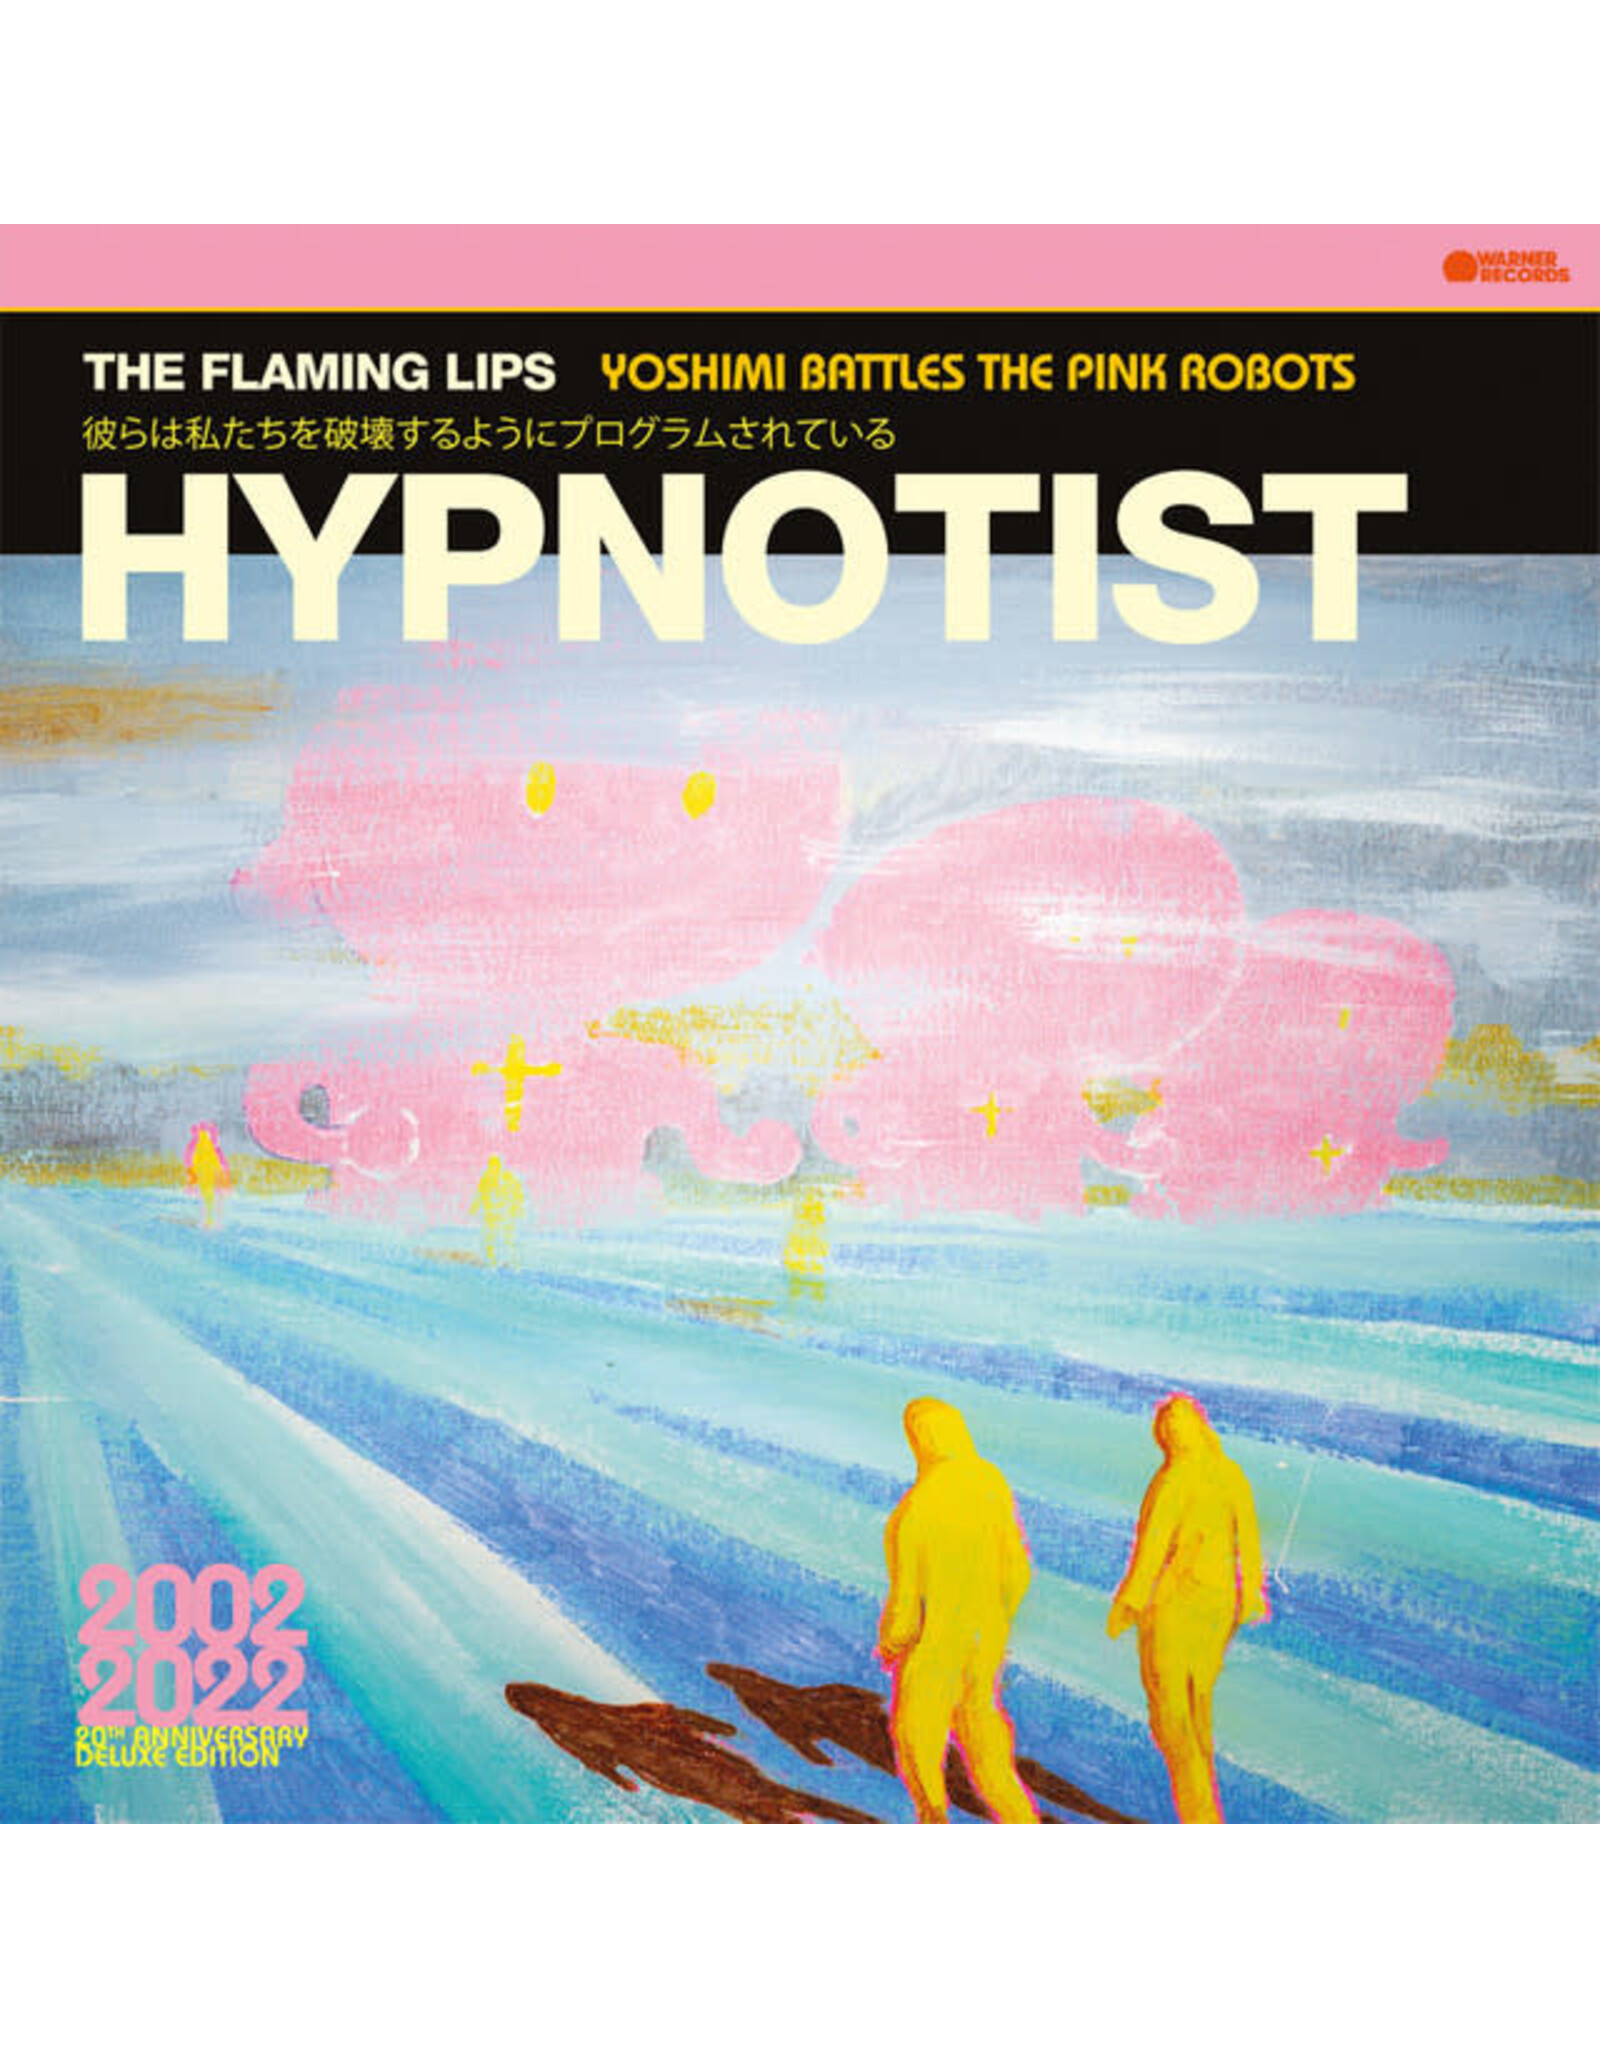 Warner Flaming Lips: Hypnotist LP